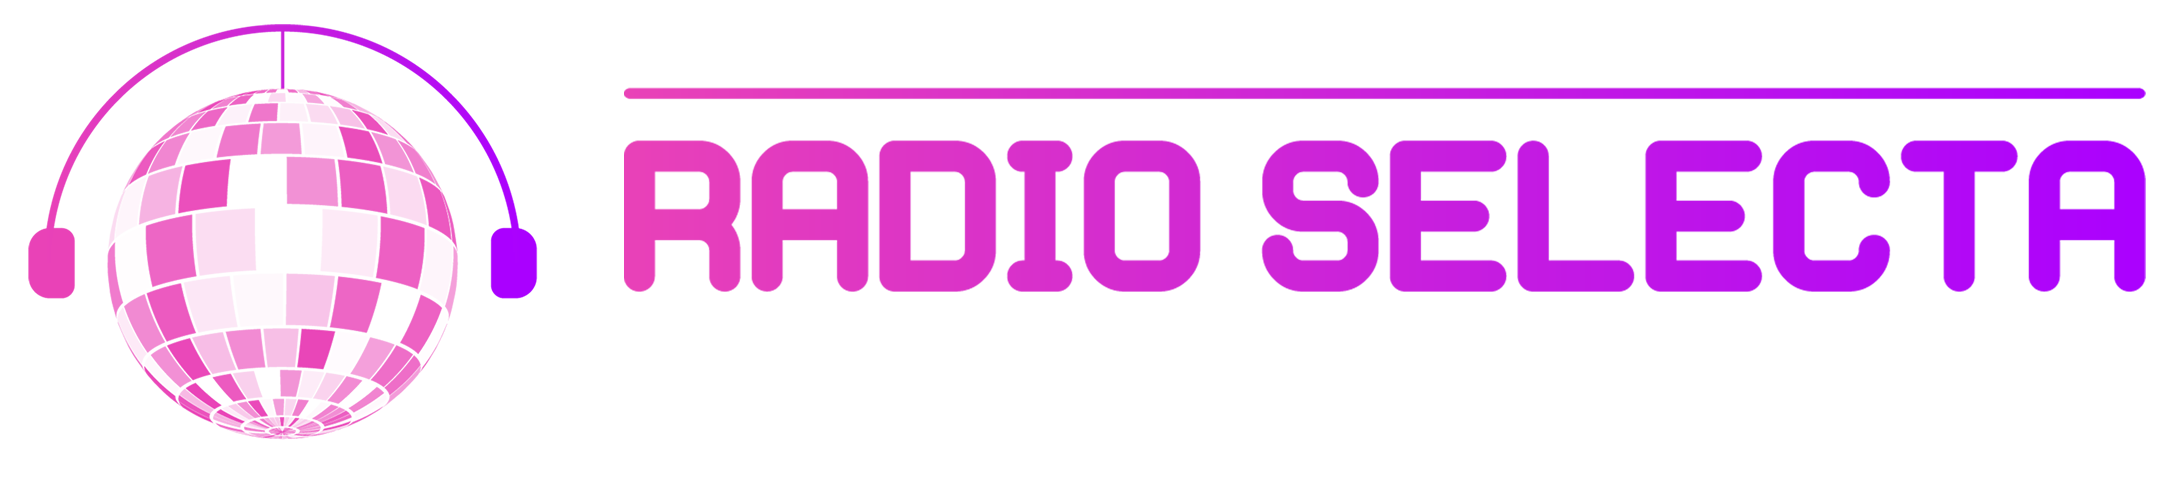 Radio Selecta